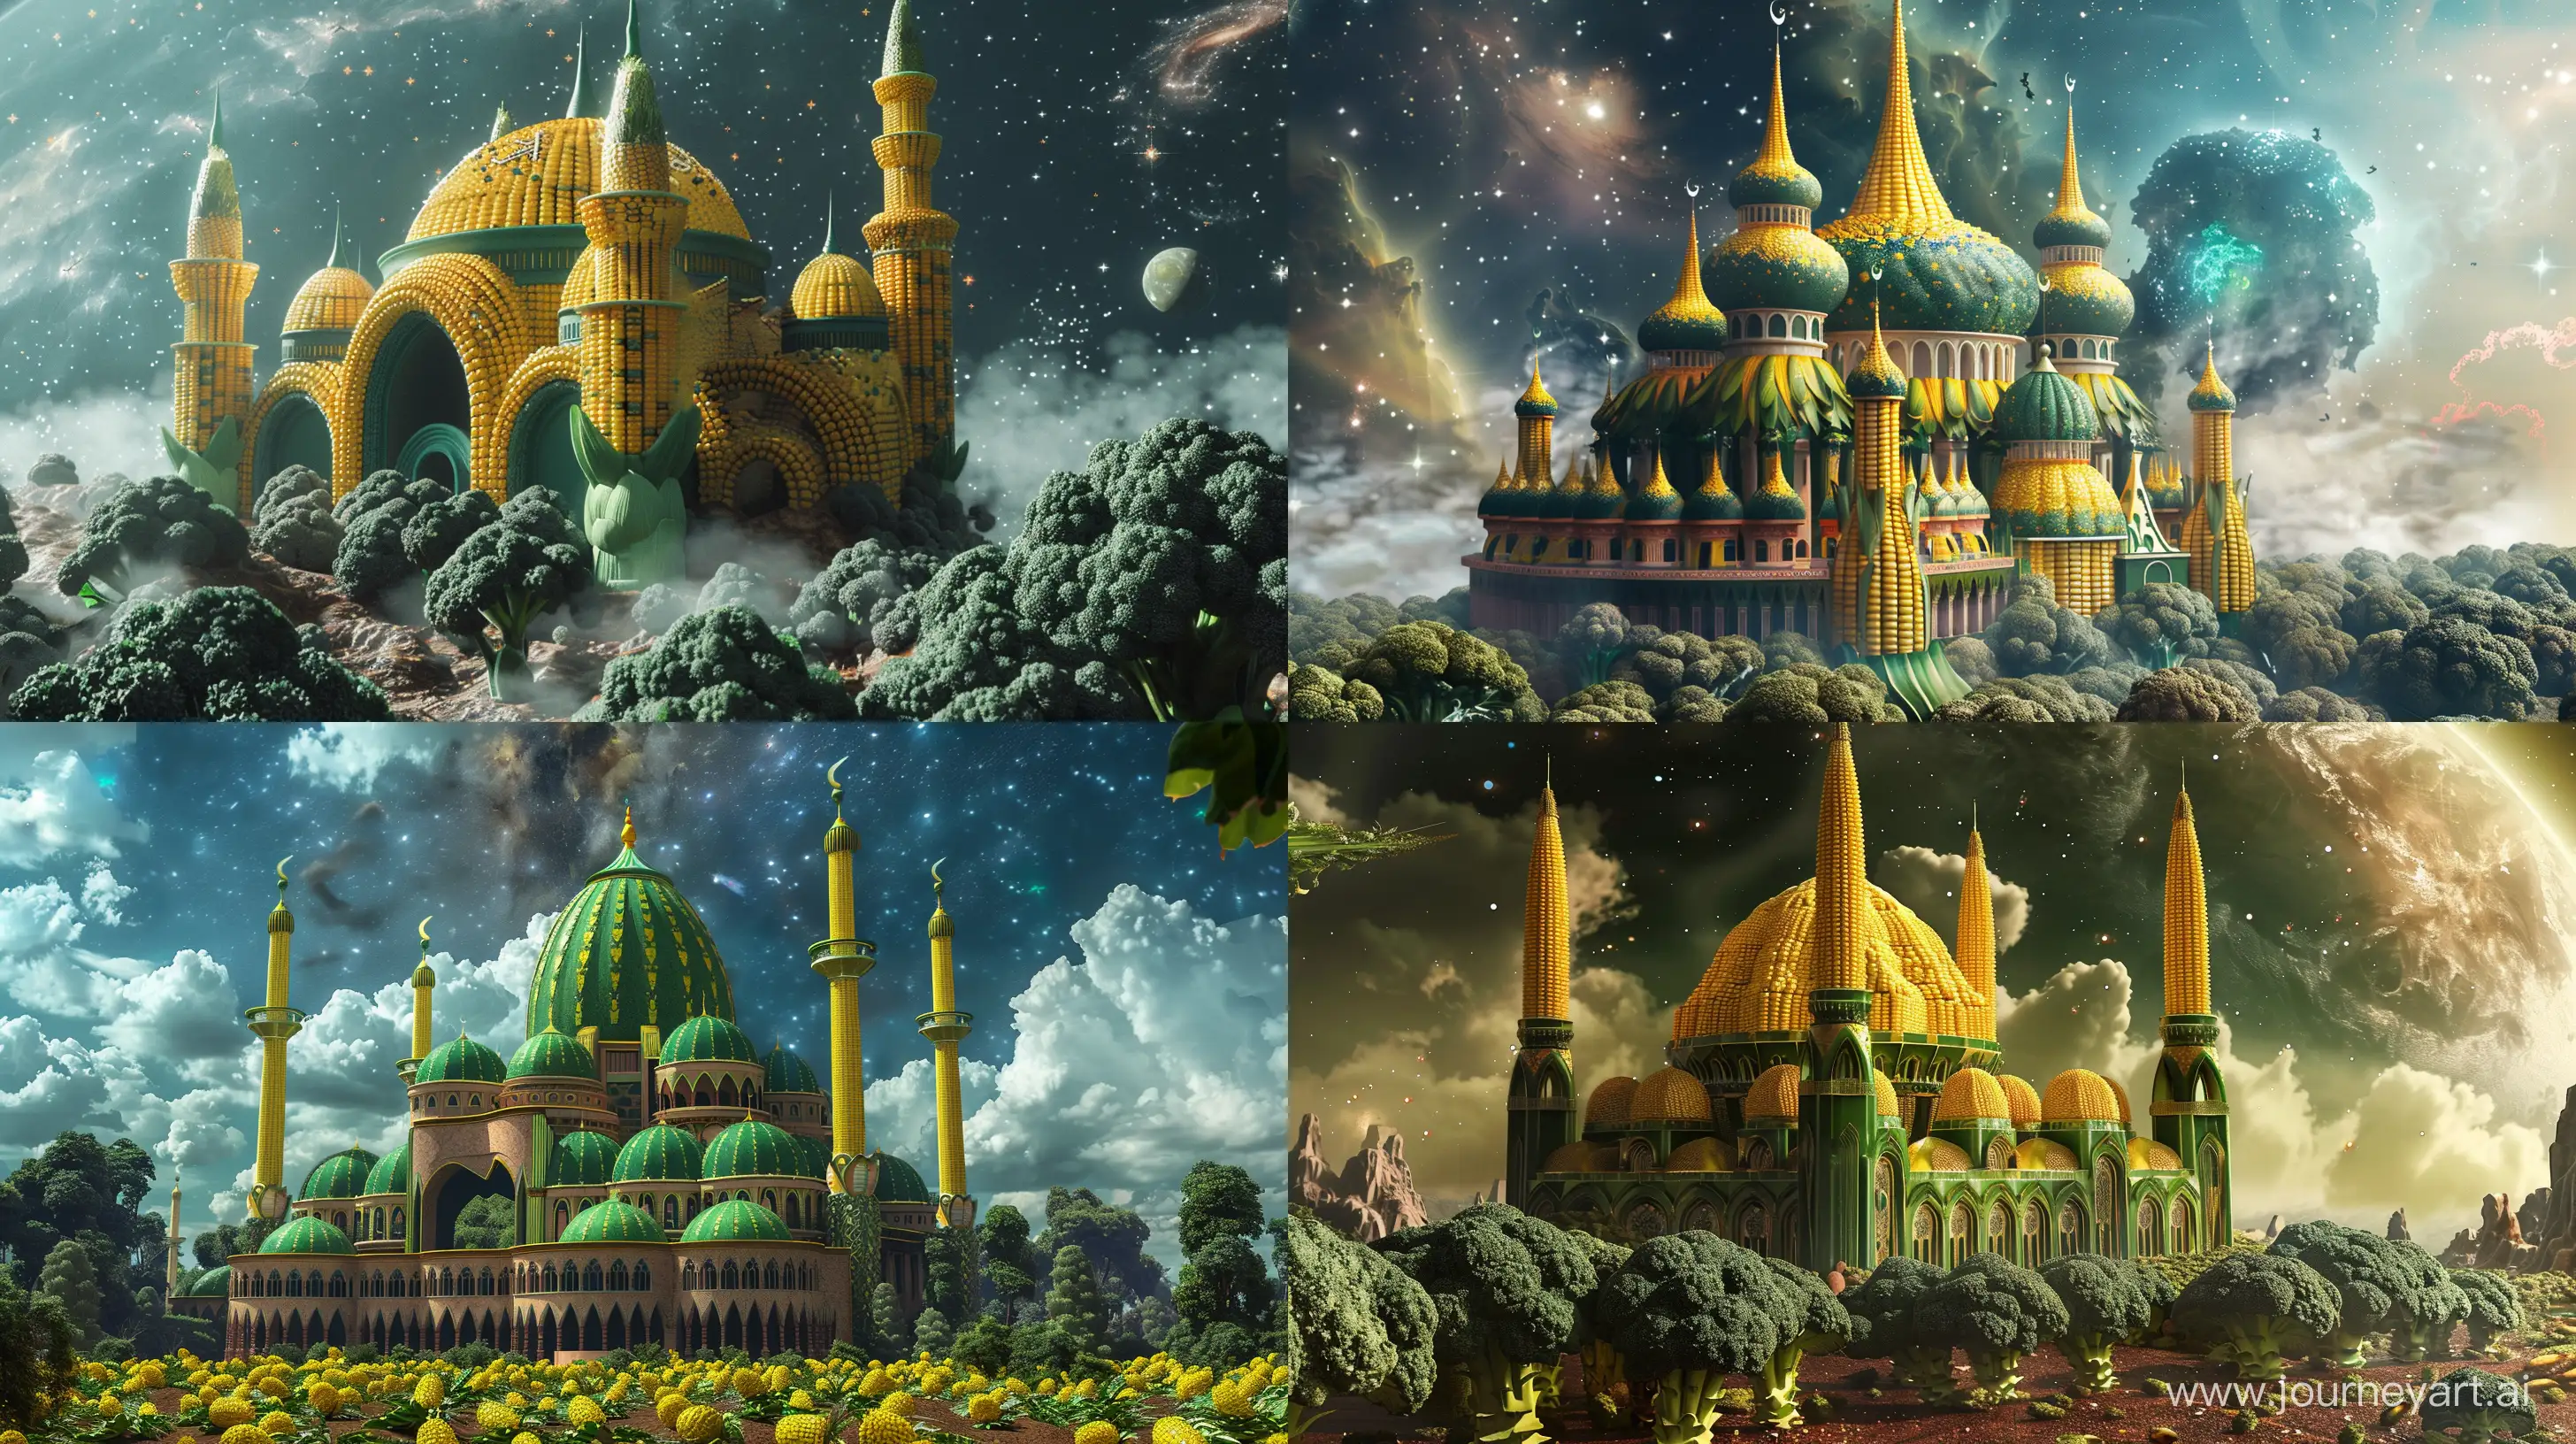 Fantasy-Galaxy-Mosque-Majestic-Corn-and-Broccoli-Structure